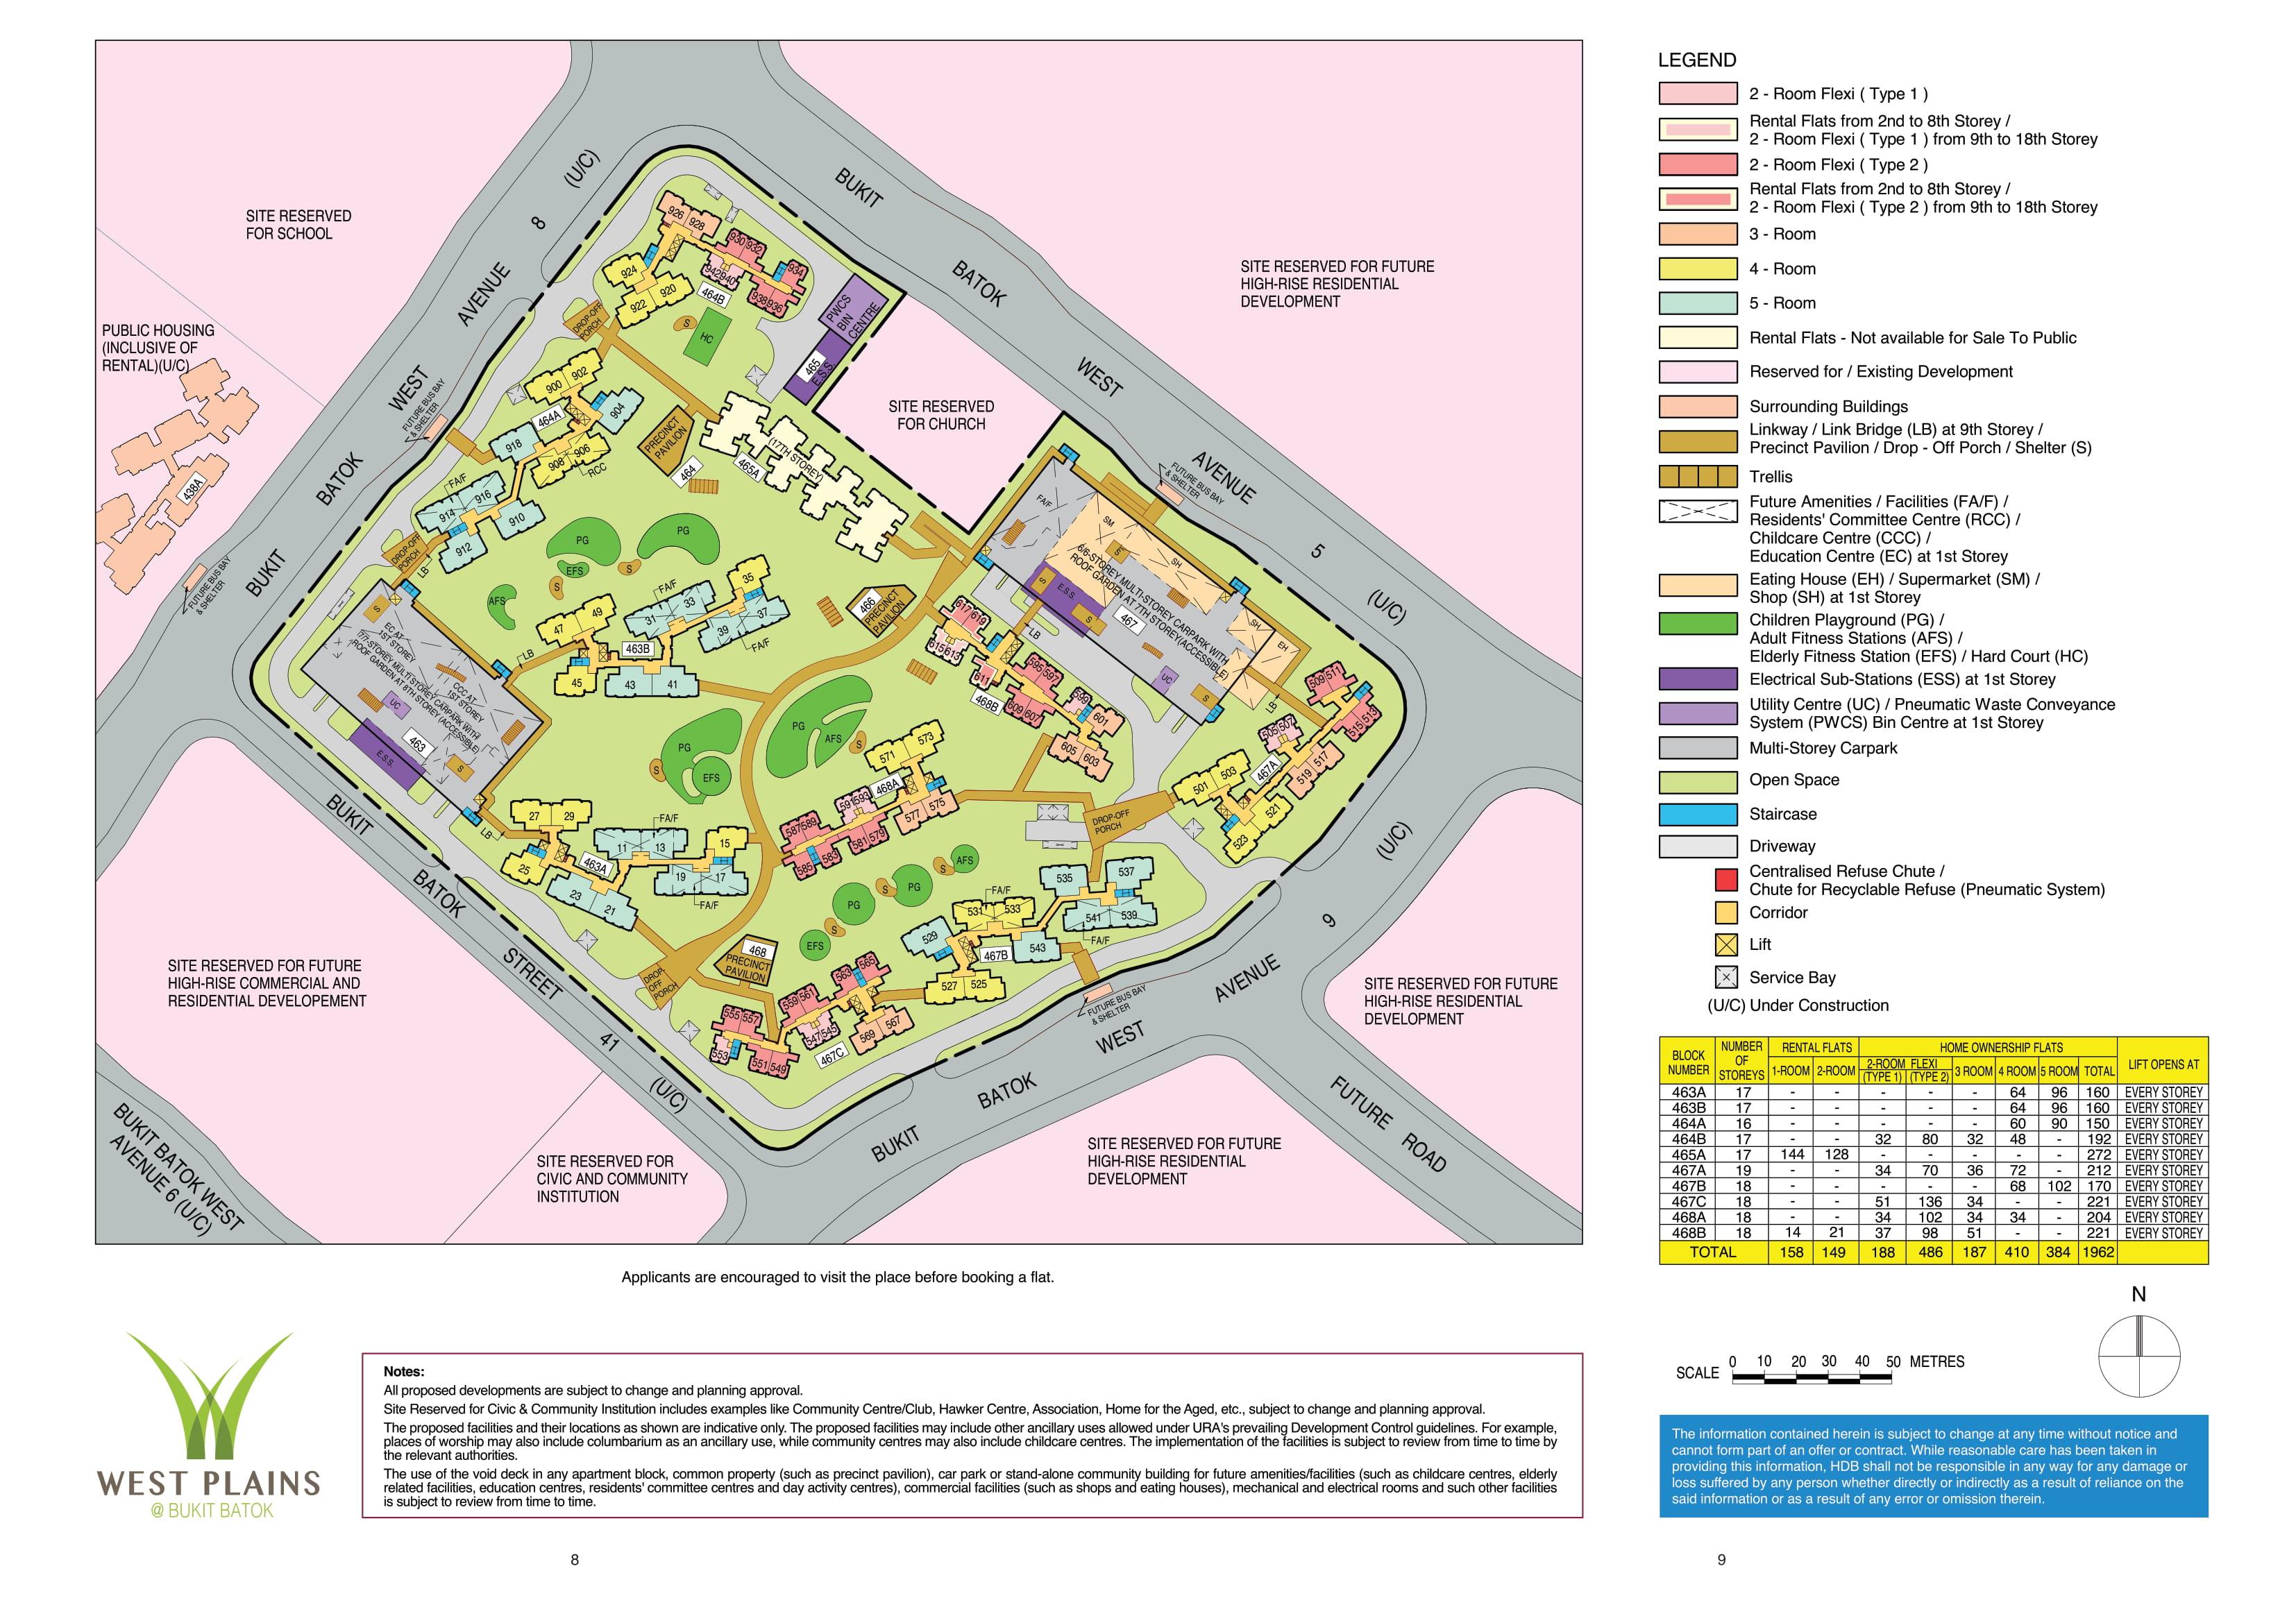 West Plains @ Bukit Batok Site Plan